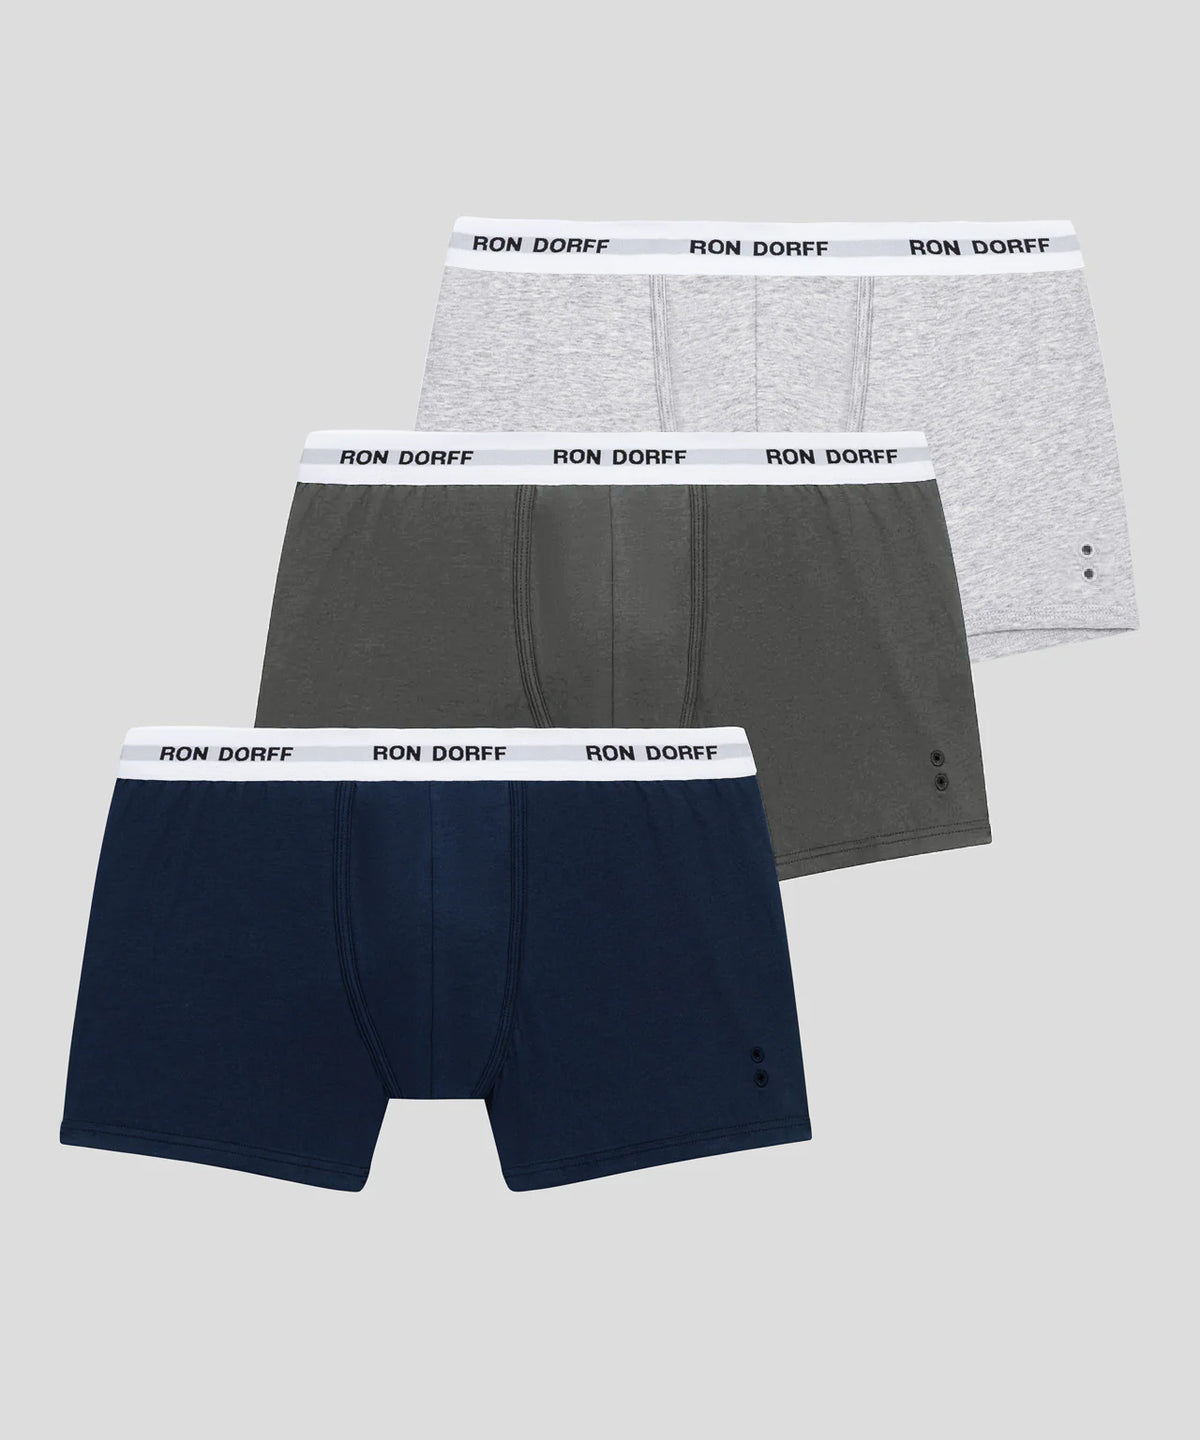 Boxer en coton à imprimés RON DORFF: Gris chiné/Vert militaire/Bleu foncé